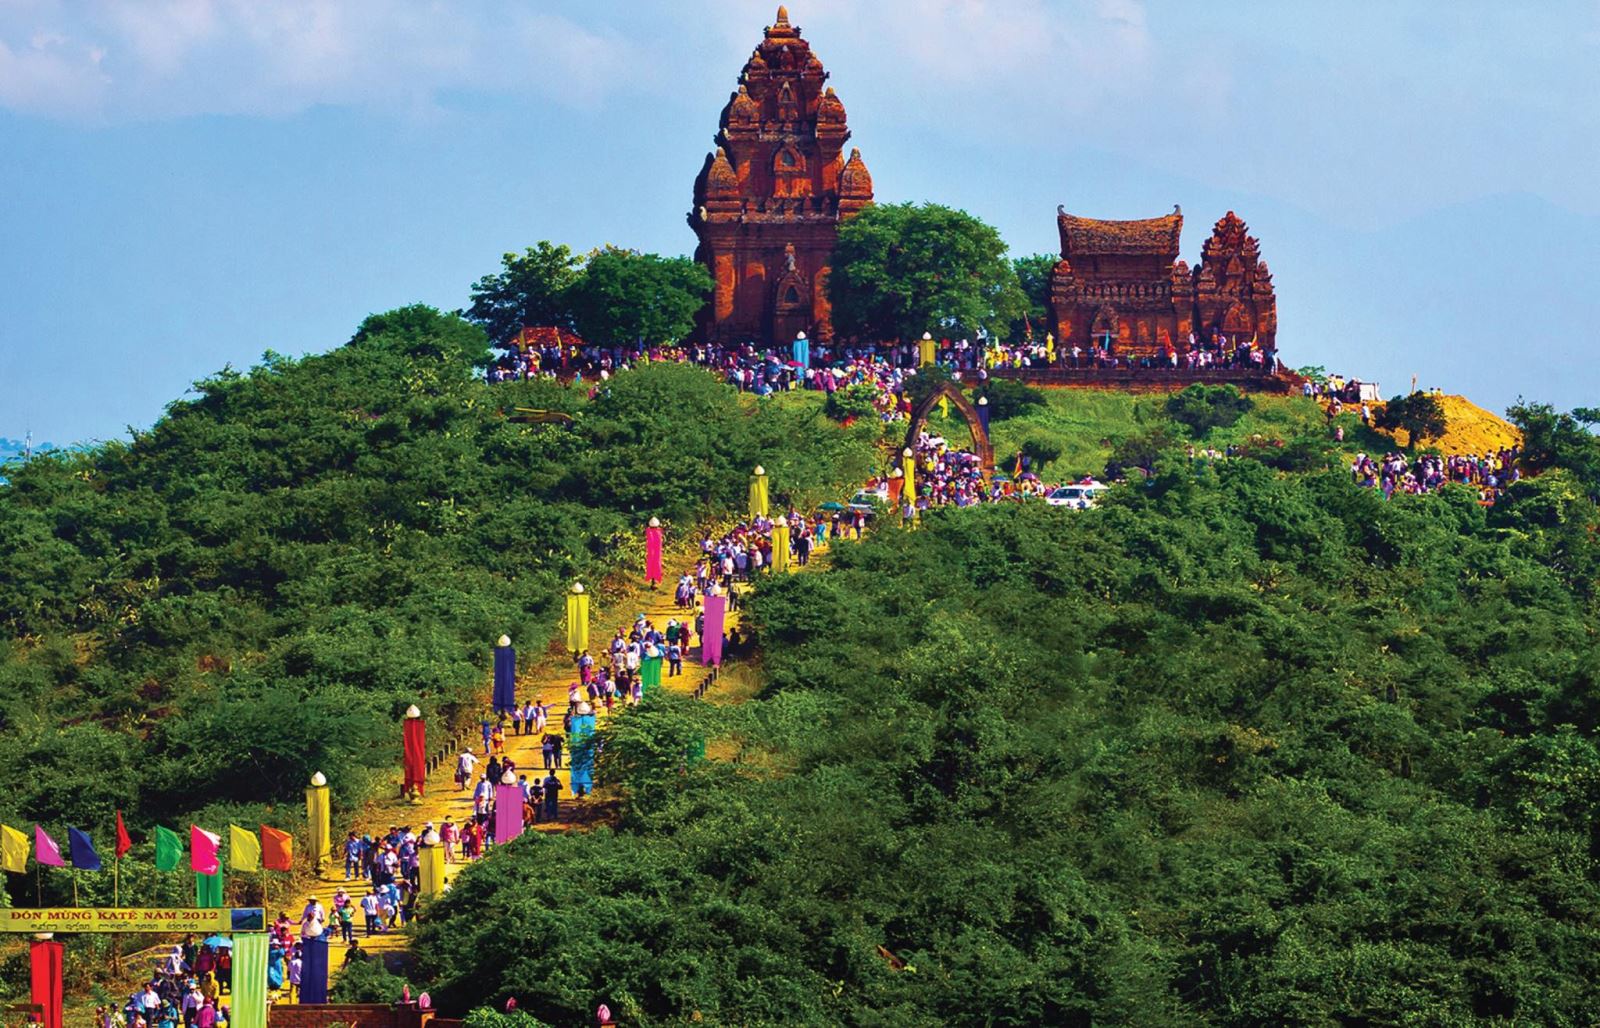 Triển lãm văn hóa tại Việt Nam là nơi thu hút hàng ngàn lượt khách đến tham quan và khám phá những sắc màu văn hoá độc đáo của Việt Nam. Hãy cùng đến triển lãm để trải nghiệm những sắc màu đẹp nhất cùng với màu trắng tinh khôi.